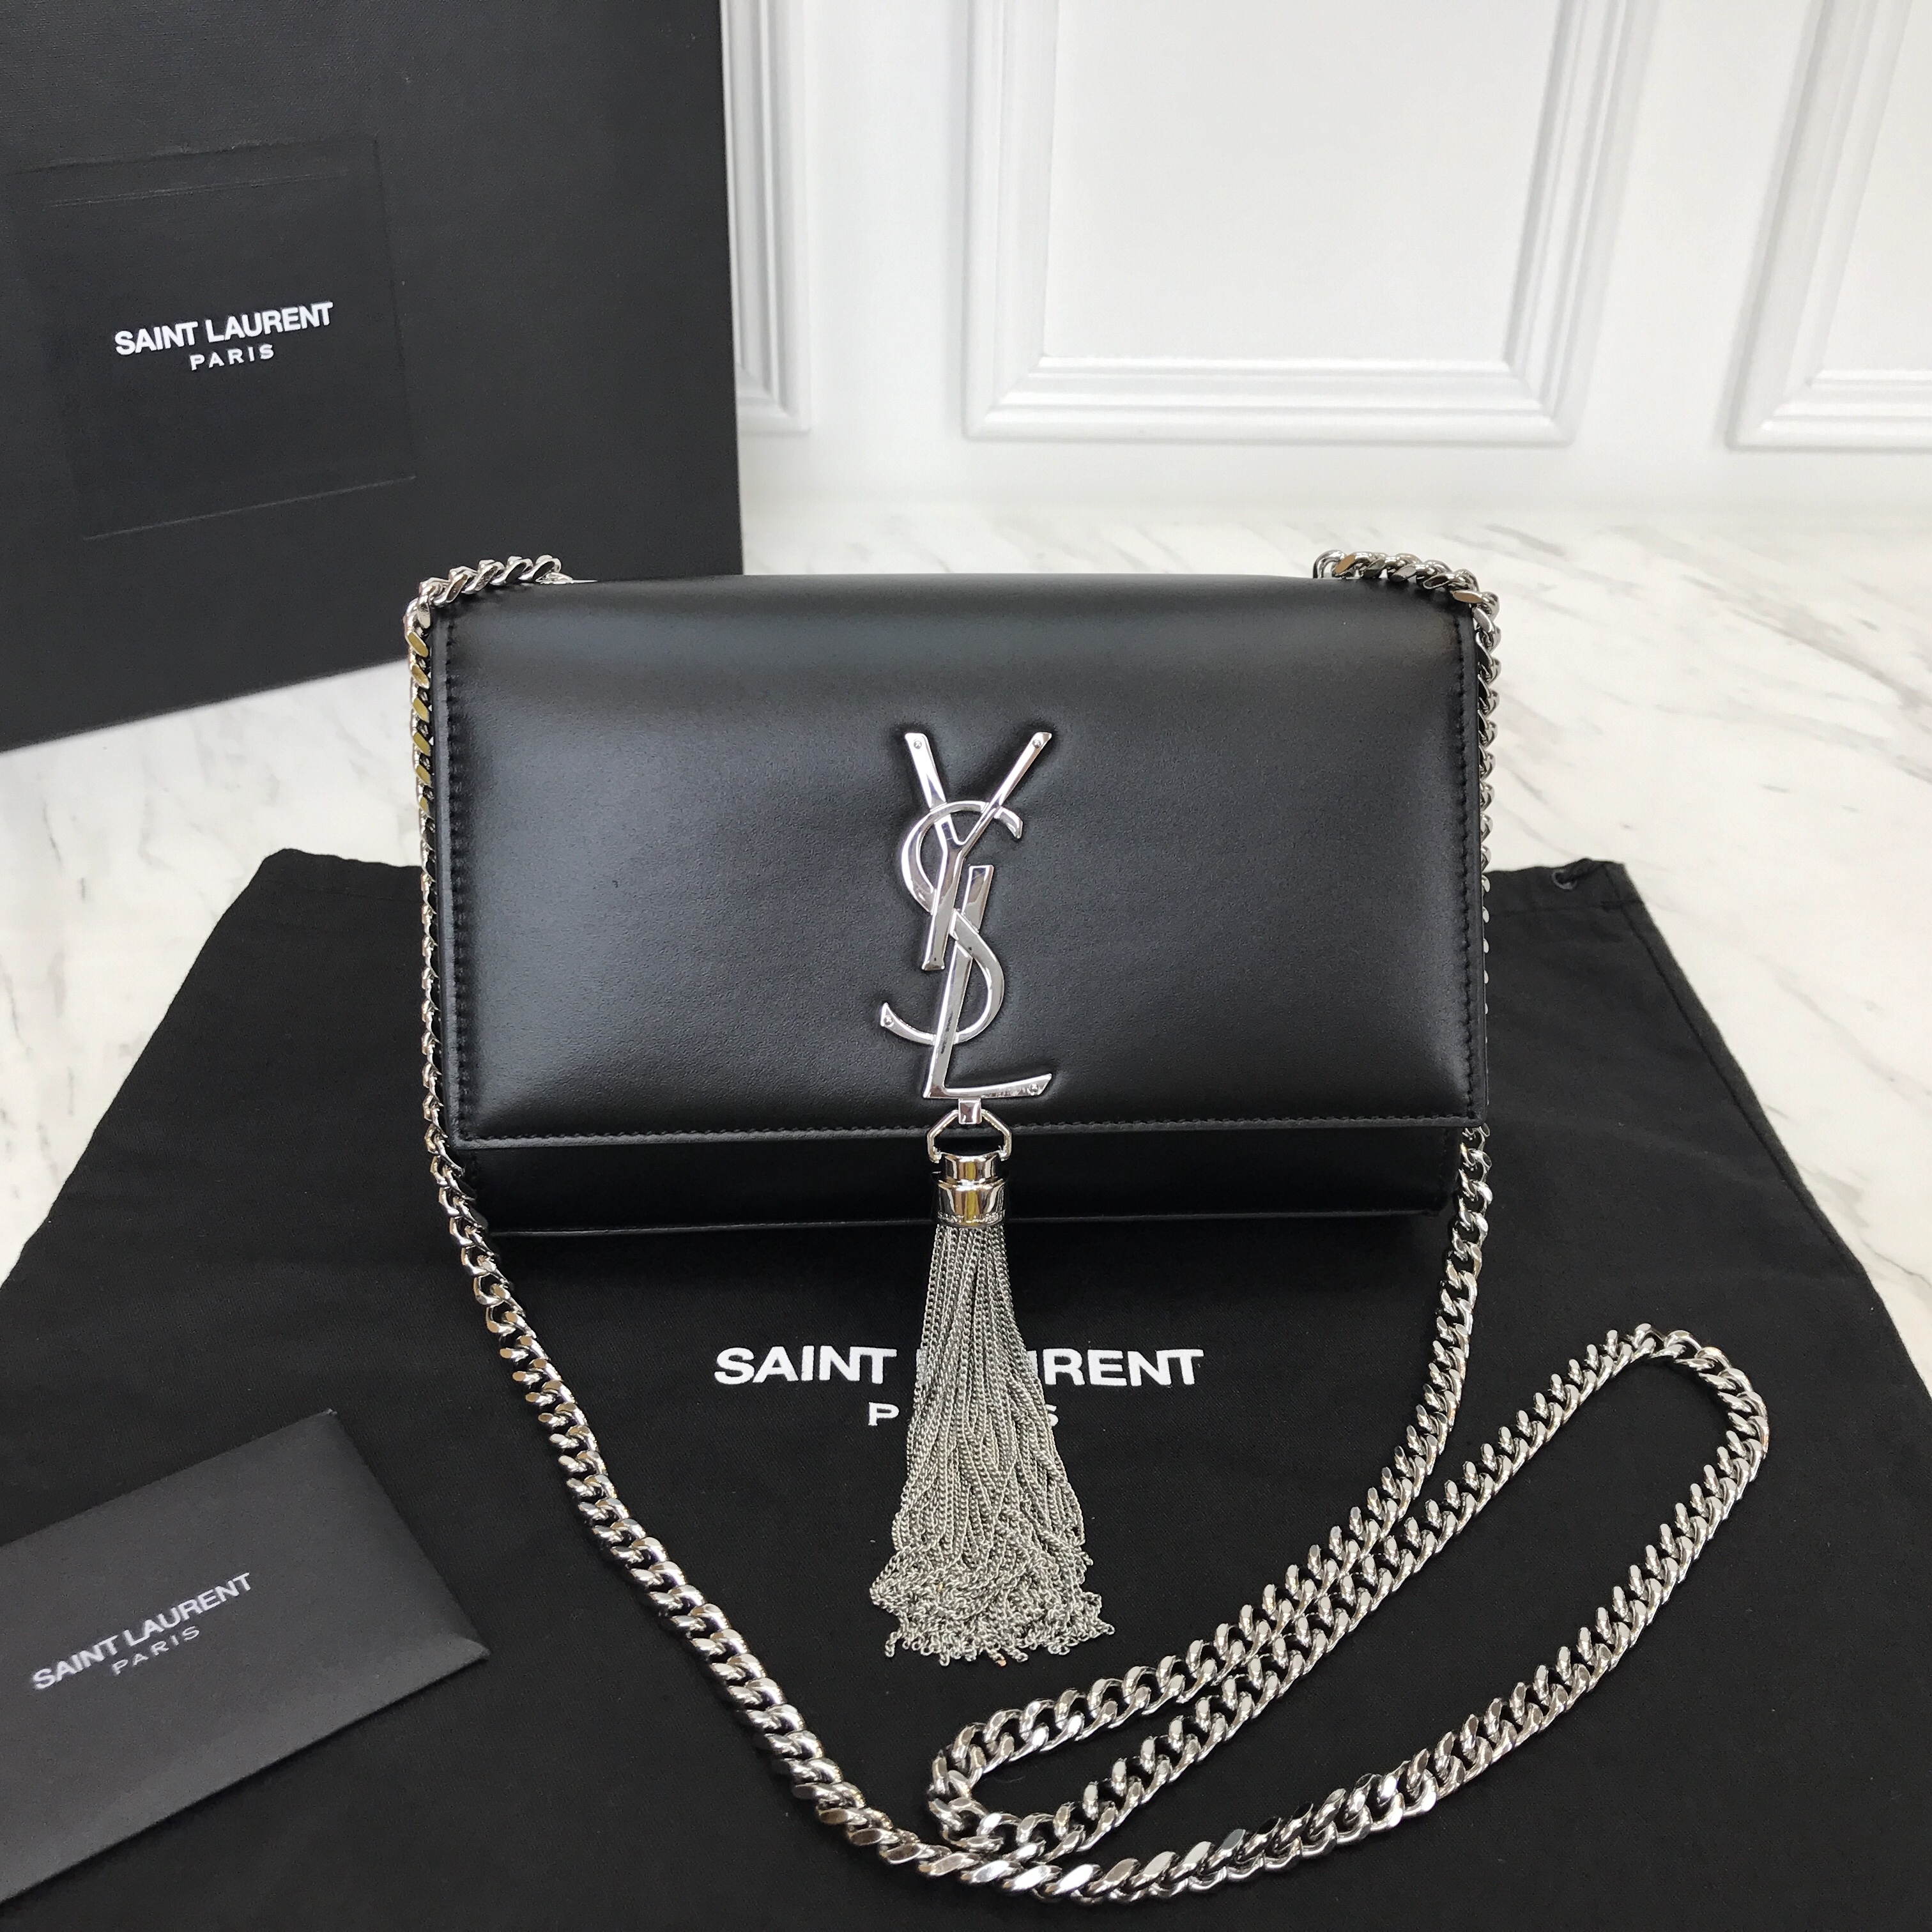 Yves Saint Laurent Handbags Outlet | NAR Media Kit